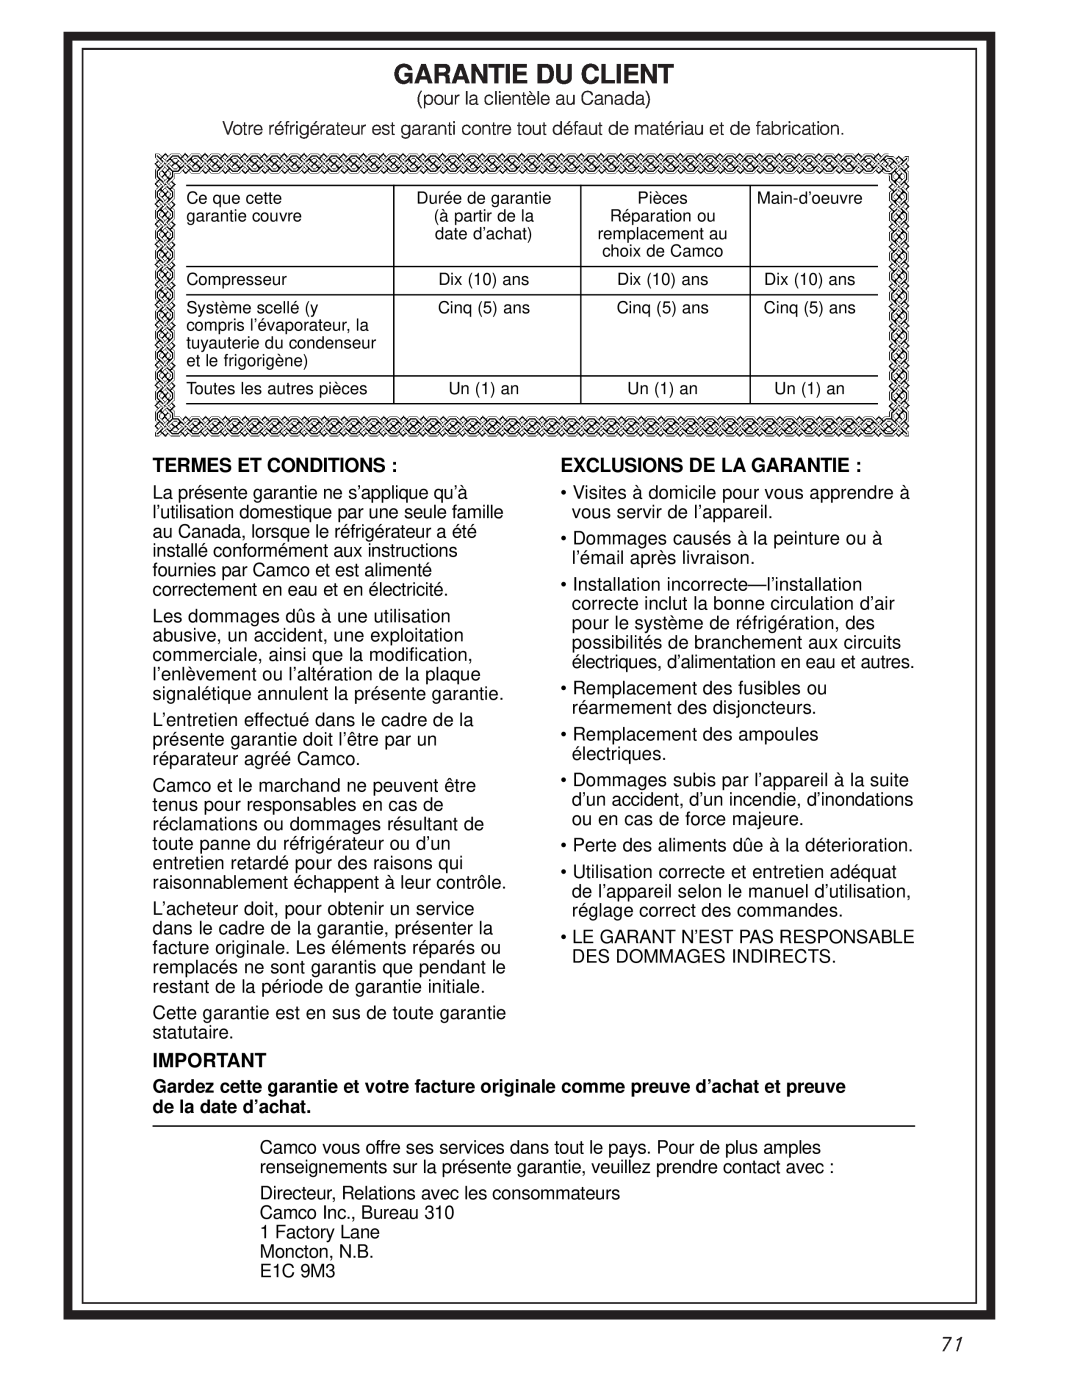 GE 24 CustomStyle, 49-60021-2, 162D9617P008 owner manual Garantie Du Client, Termes Et Conditions, Exclusions De La Garantie 